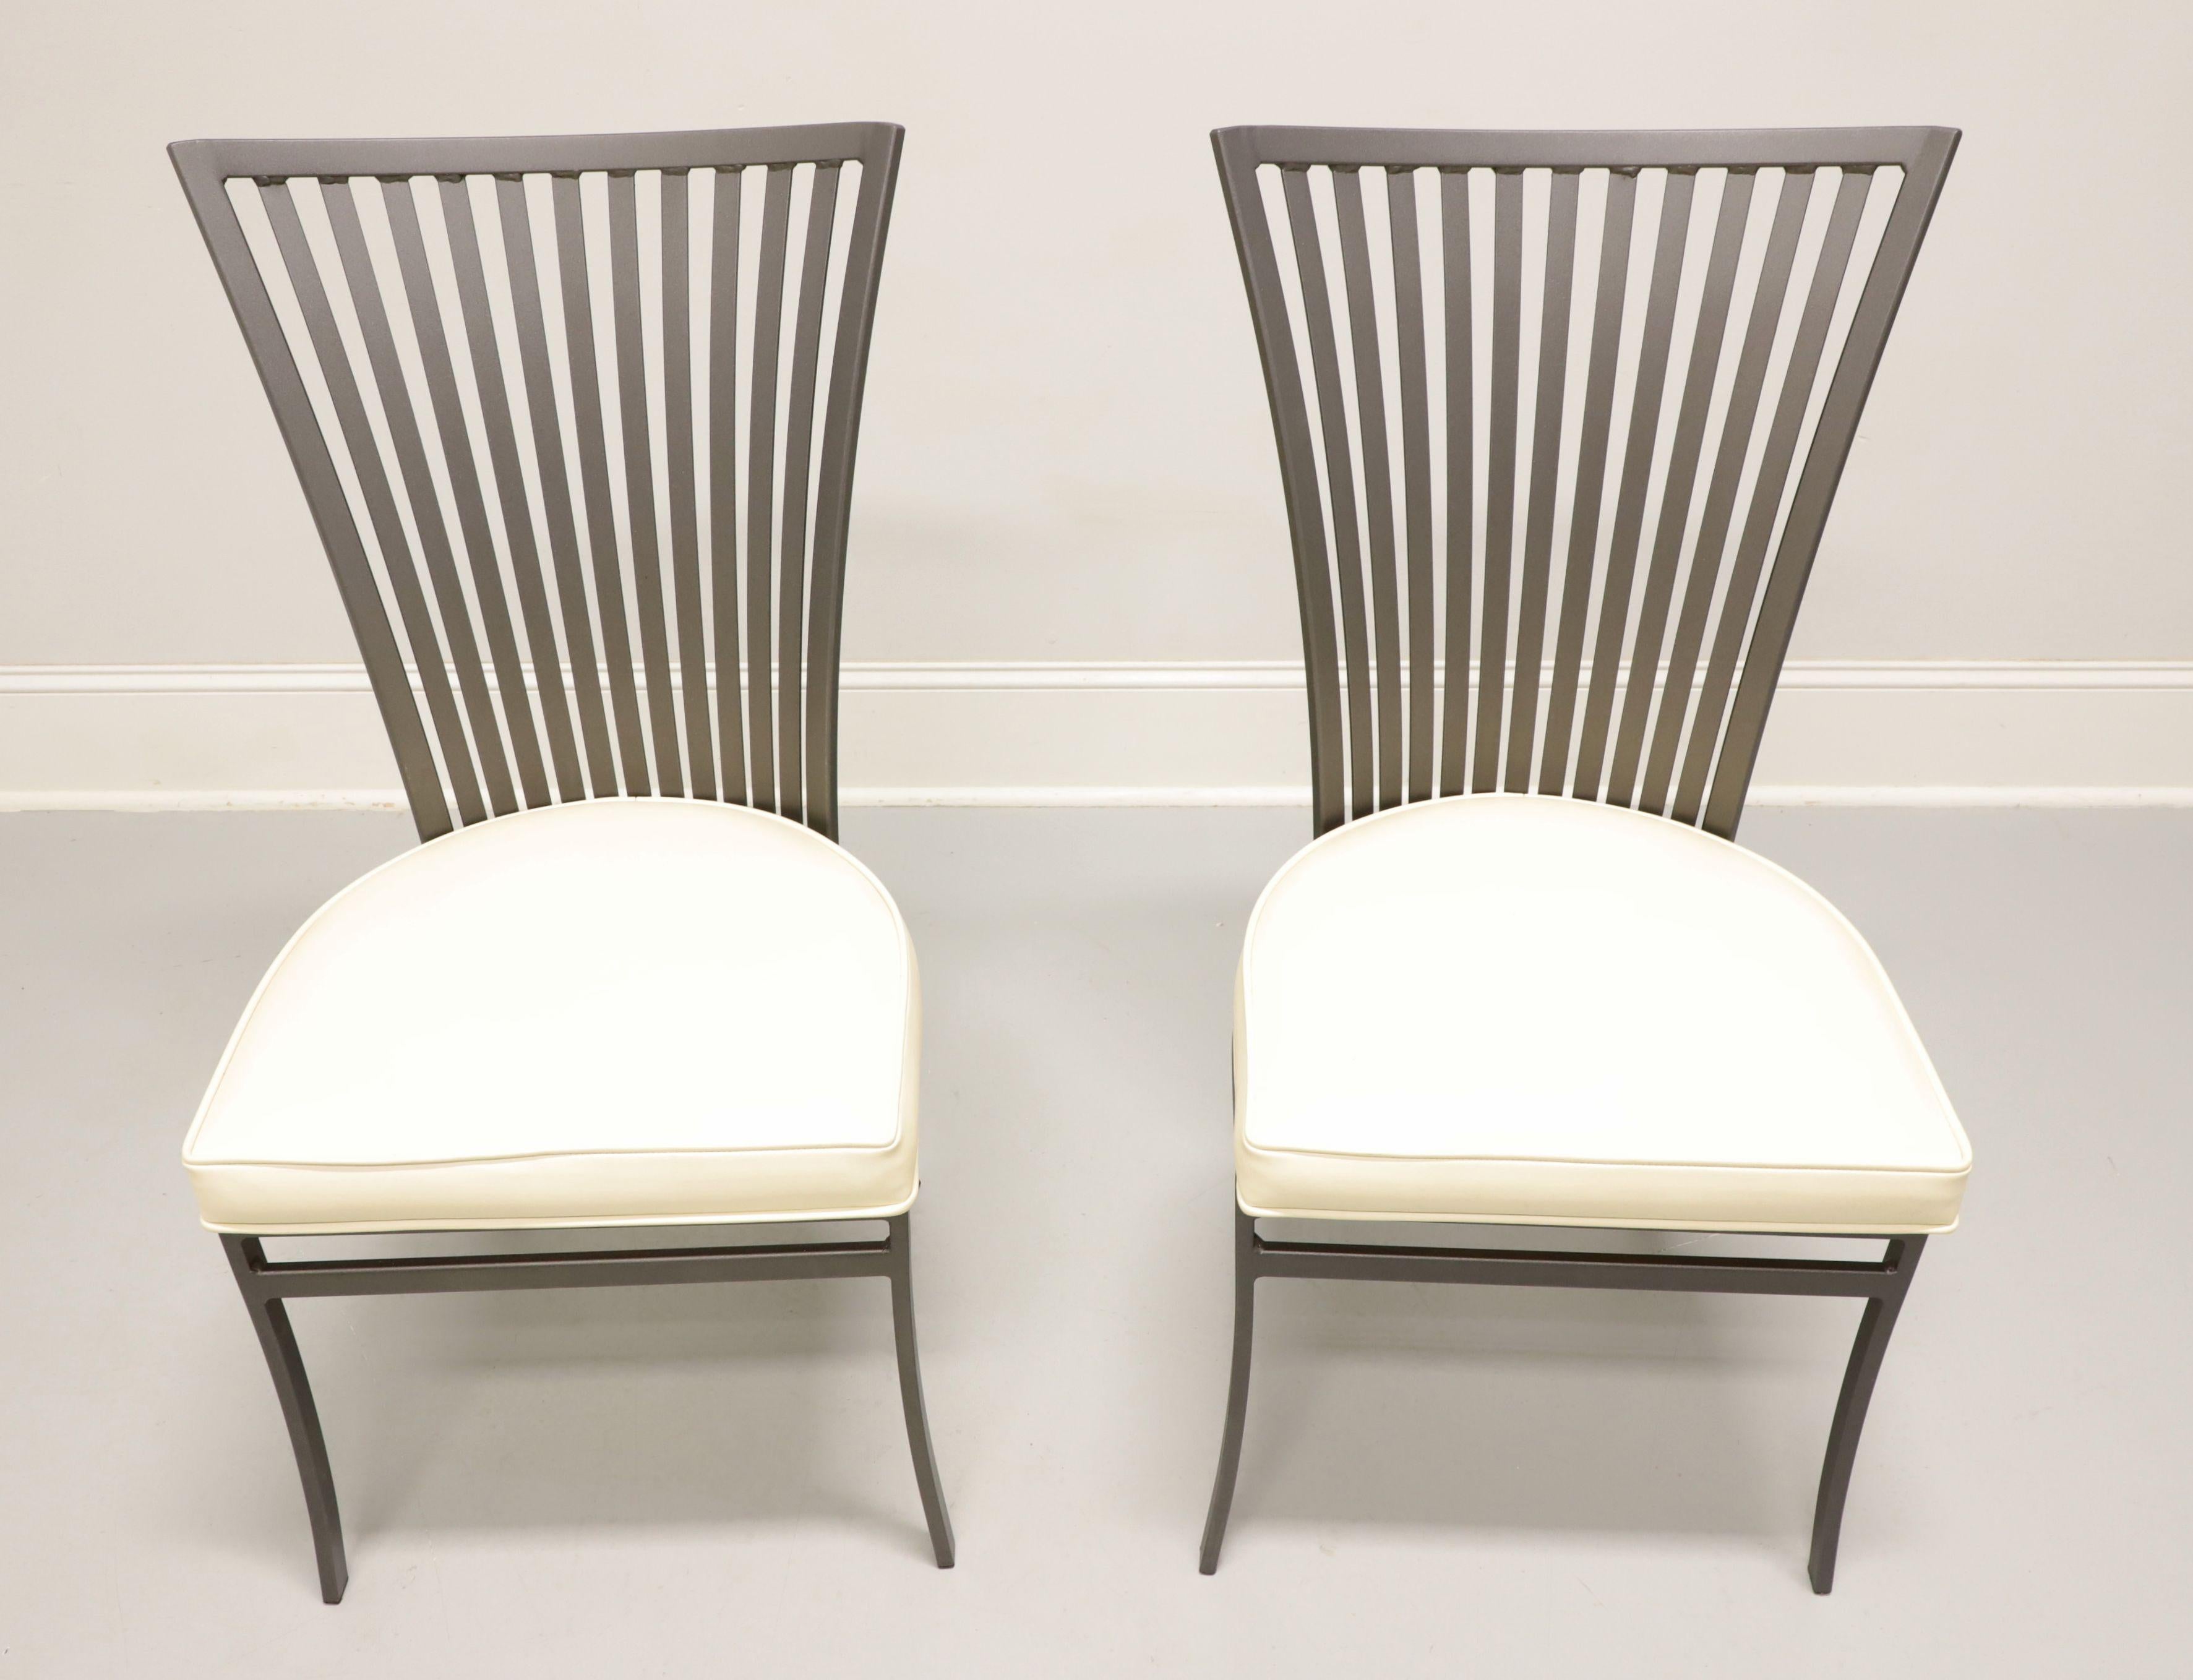 Zwei stählerne Terrassenstühle im modernen Stil aus der Mitte des 20. Jahrhunderts, entworfen von Arthur Umanoff für Shaver-Howard. Metallgestell aus Stahl, grau lackiert, ausgestellte Rückenlehne mit geradem Kamm und Spindeln, gepolsterter Sitz aus